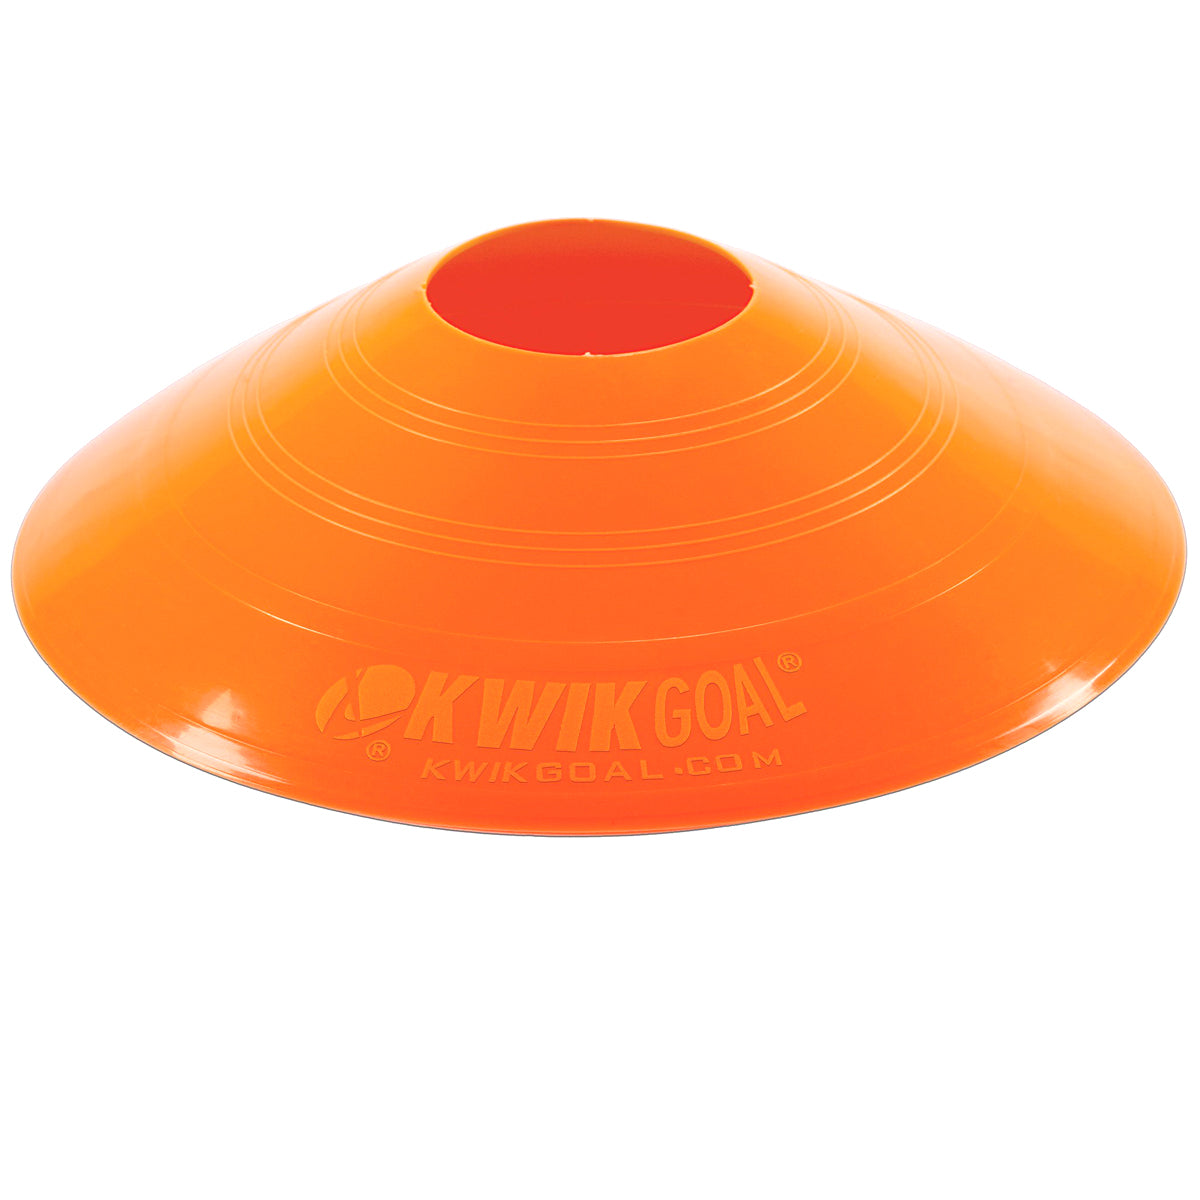 Kwikgoal Small Disc Cones Soccer Coaching Equipment | 6A10 Field equipment Kwikgoal Orange 